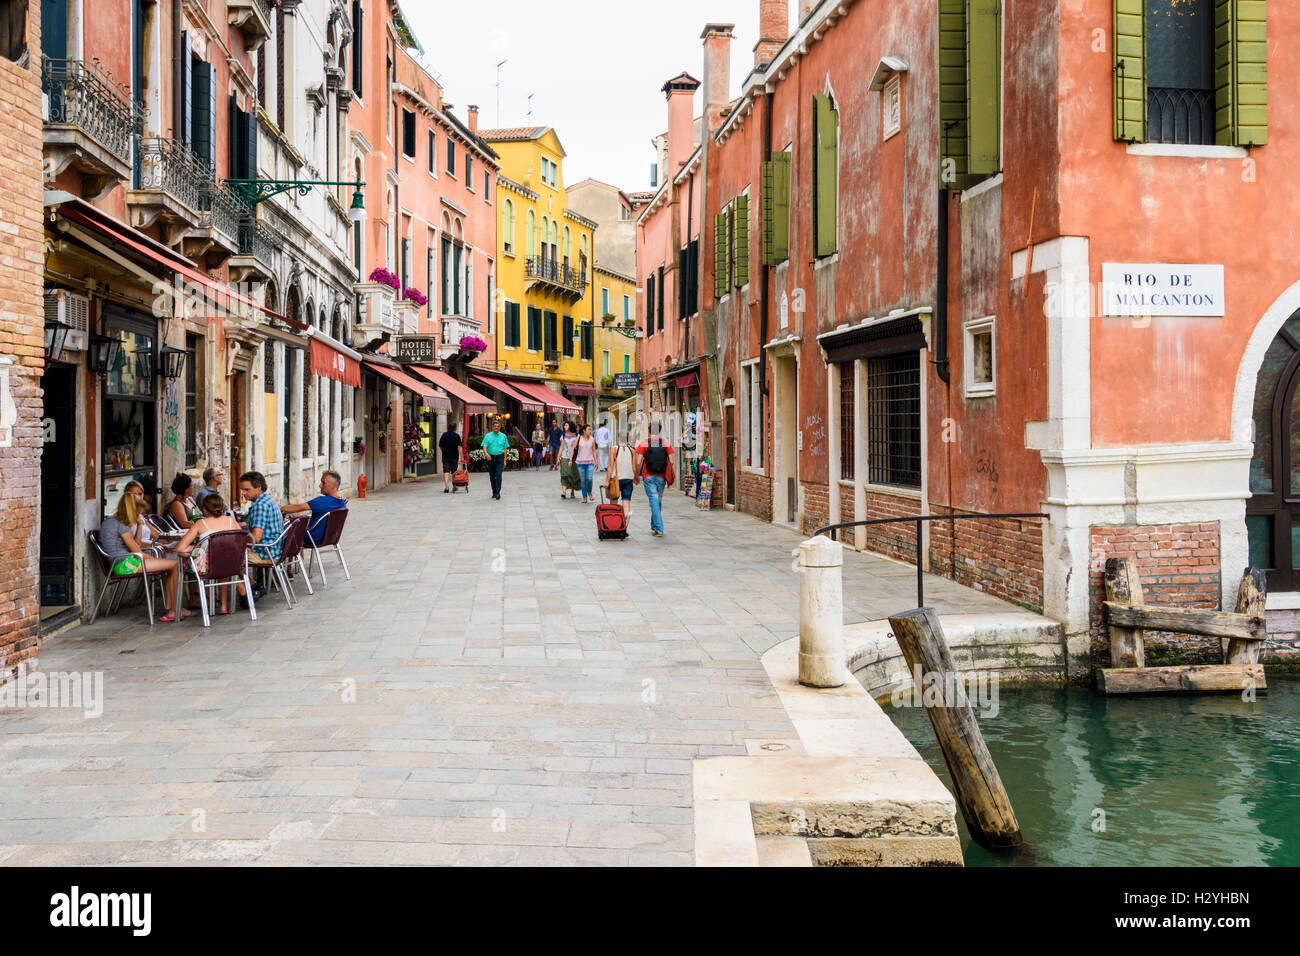 La vie de la rue de Venise dans la région de Santa Croce le long de la Salizada San Pantalon, Venise, Italie Banque D'Images